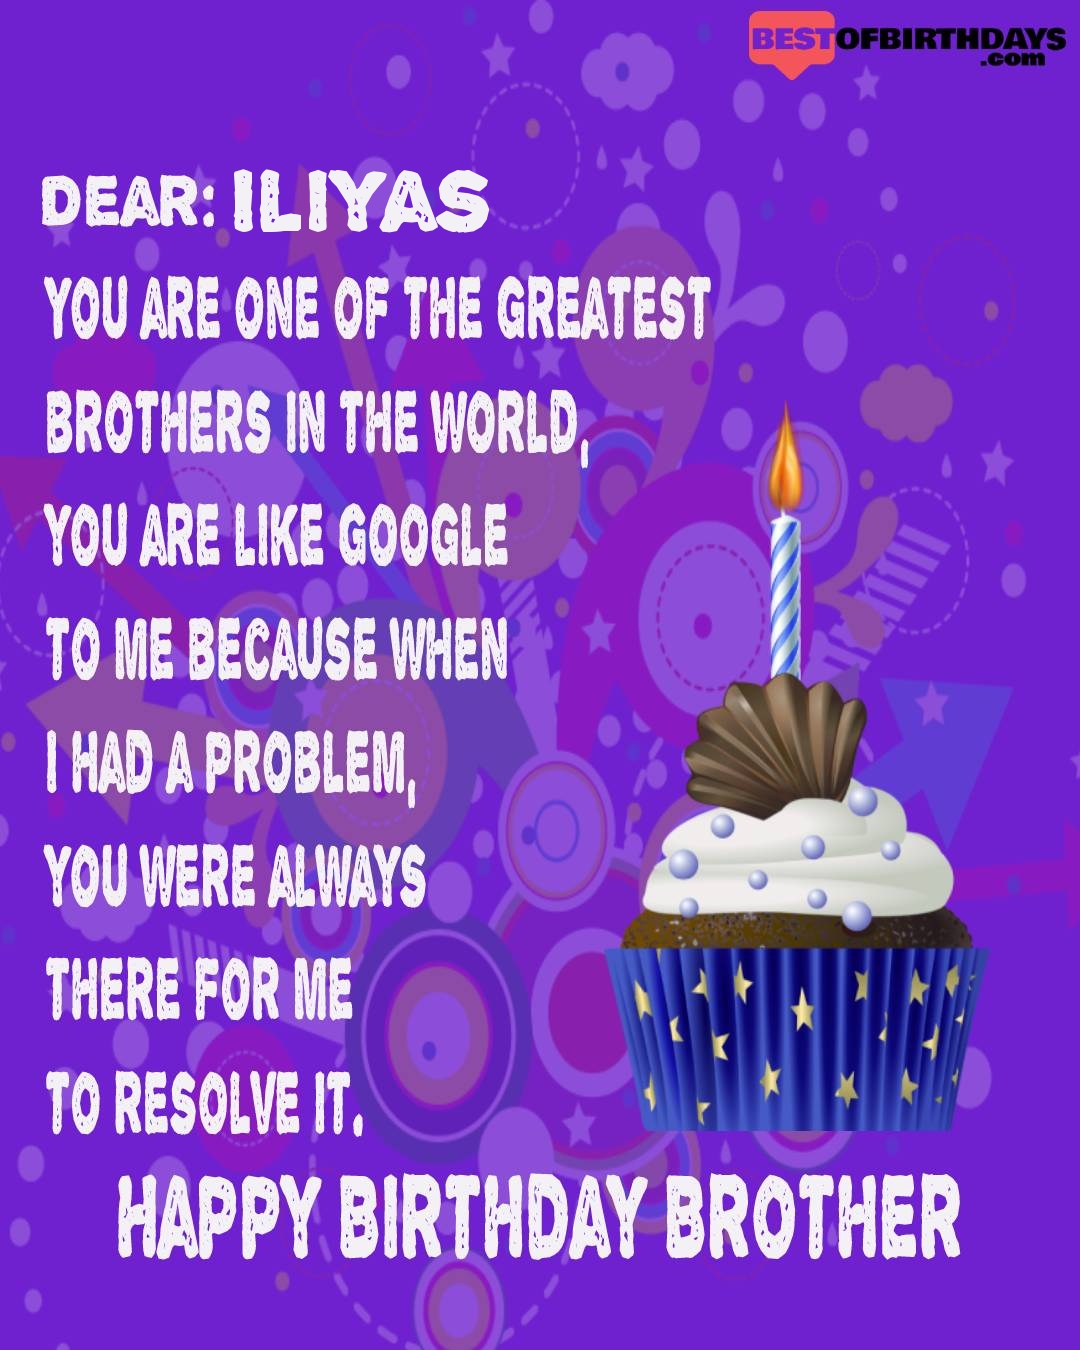 Happy birthday iliyas bhai brother bro